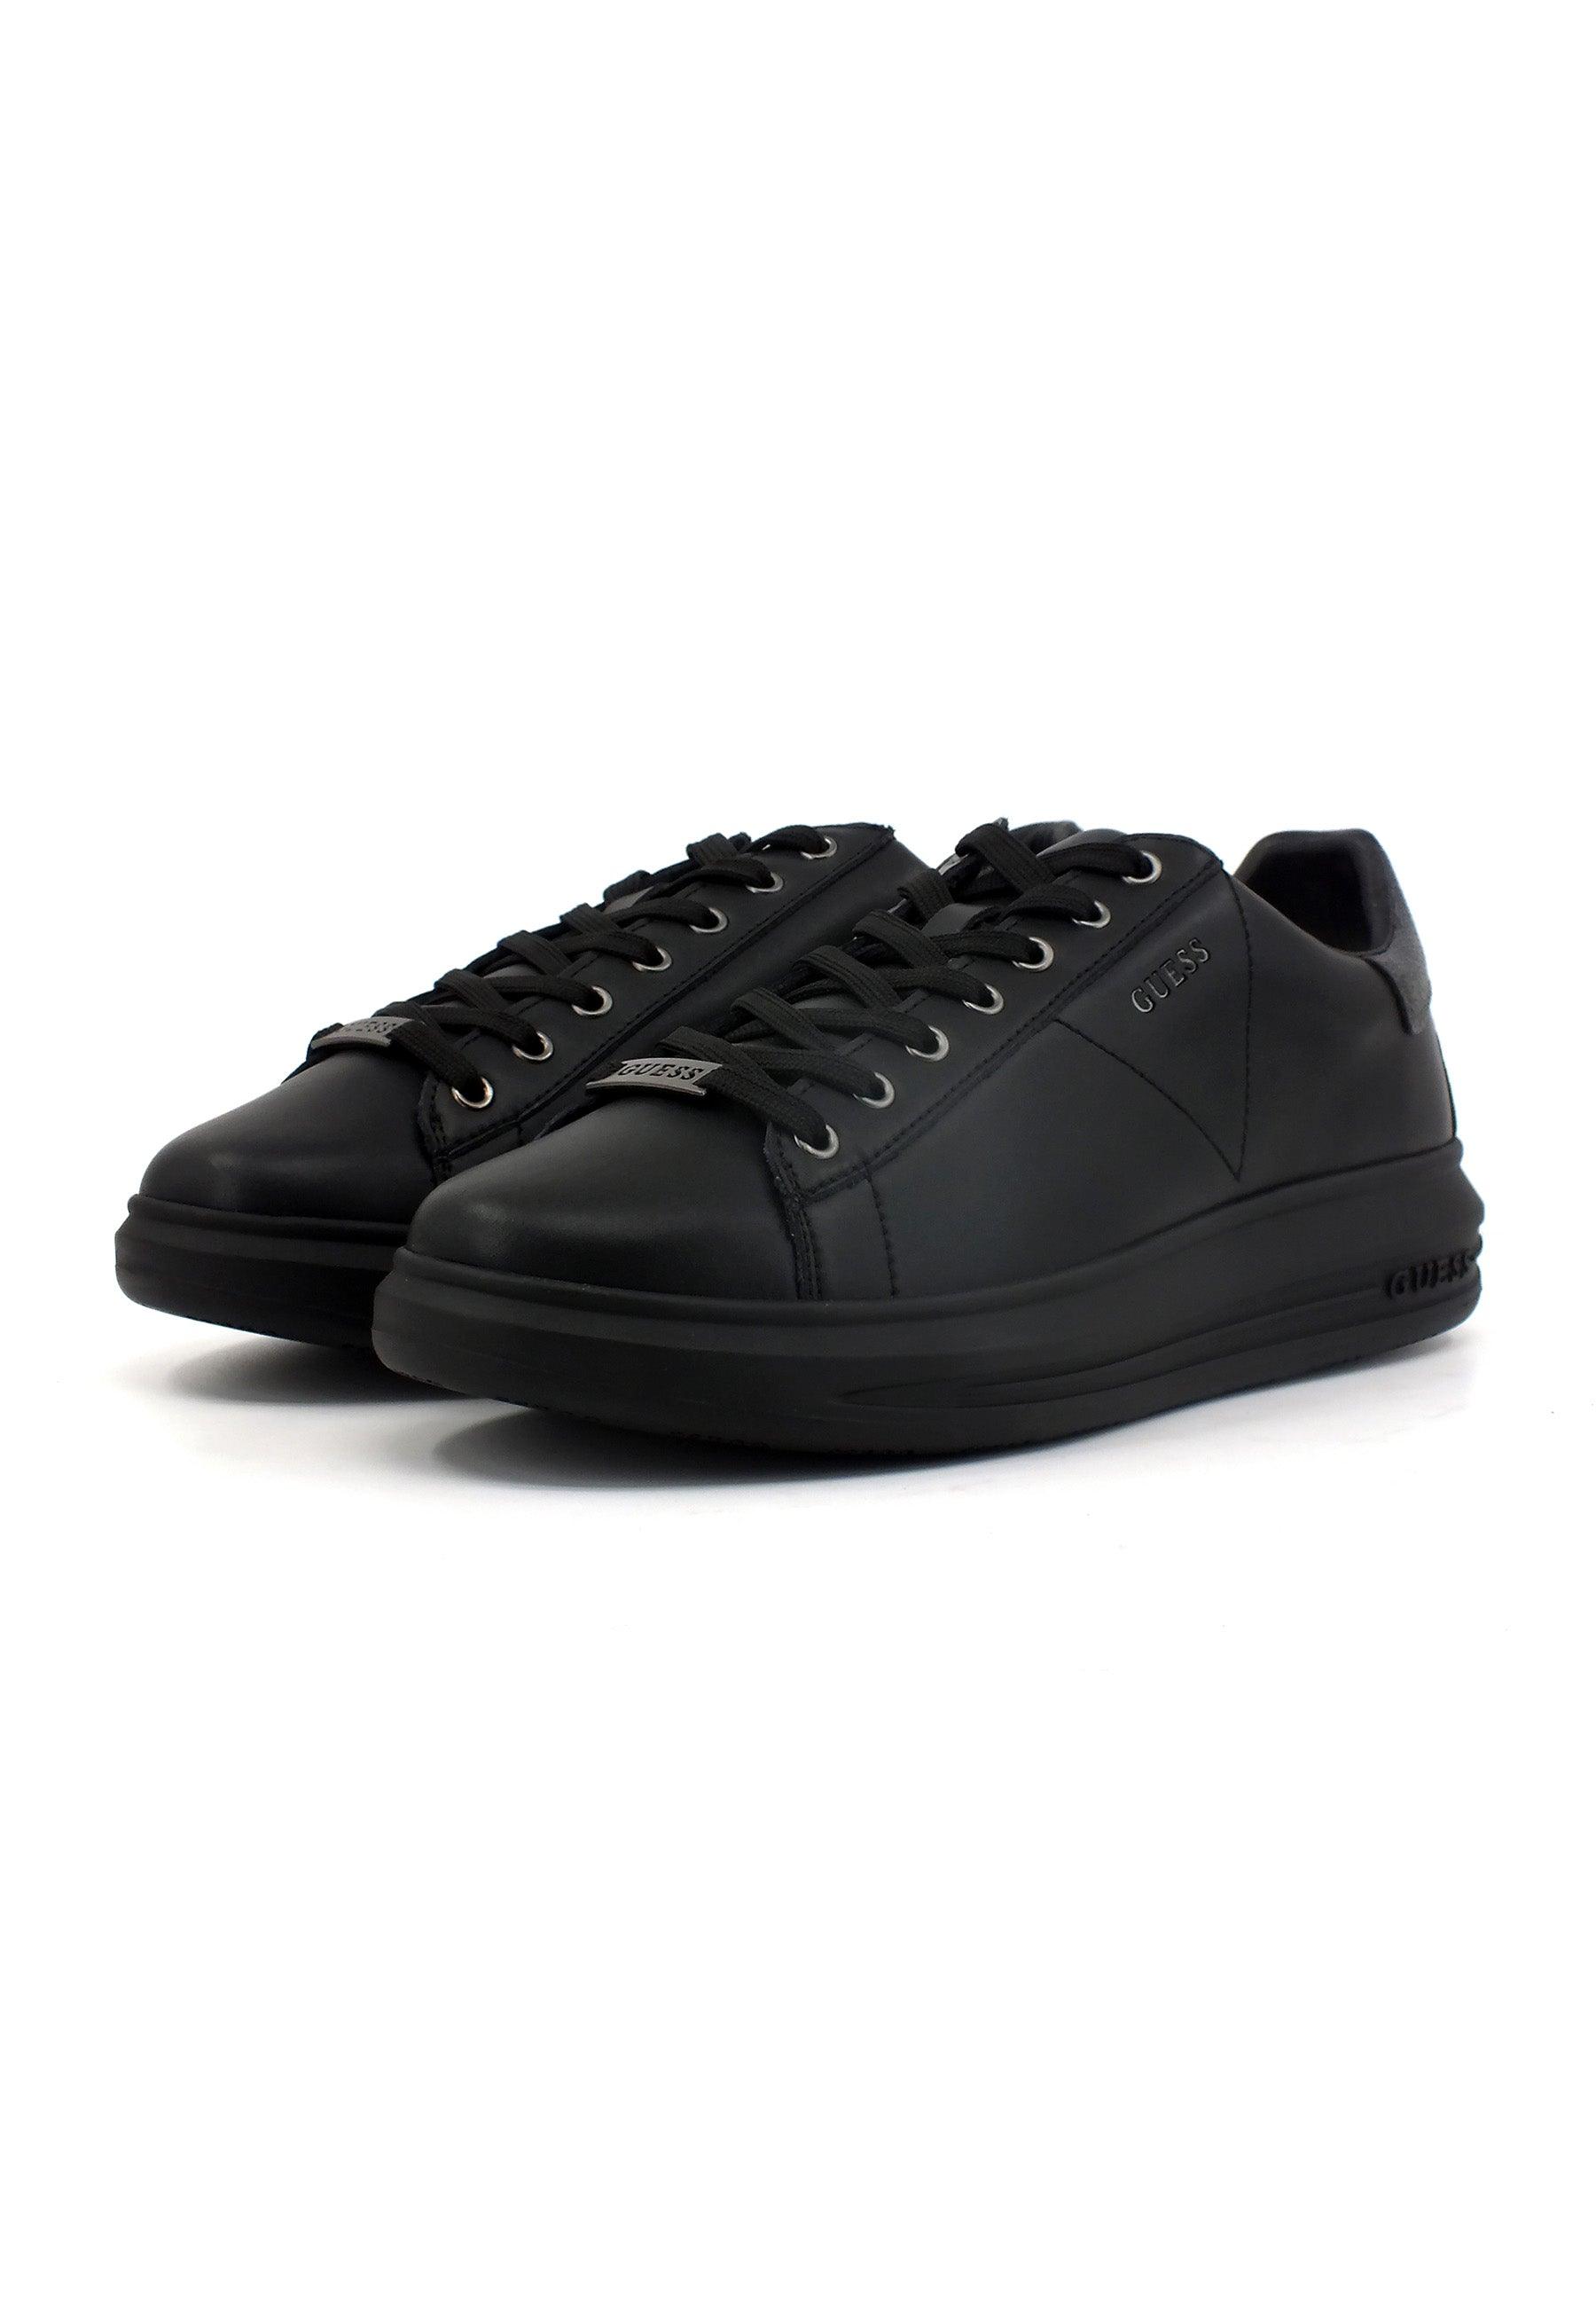 GUESS Sneaker Uomo Black Coal FM8VIBFAP12 - Sandrini Calzature e Abbigliamento